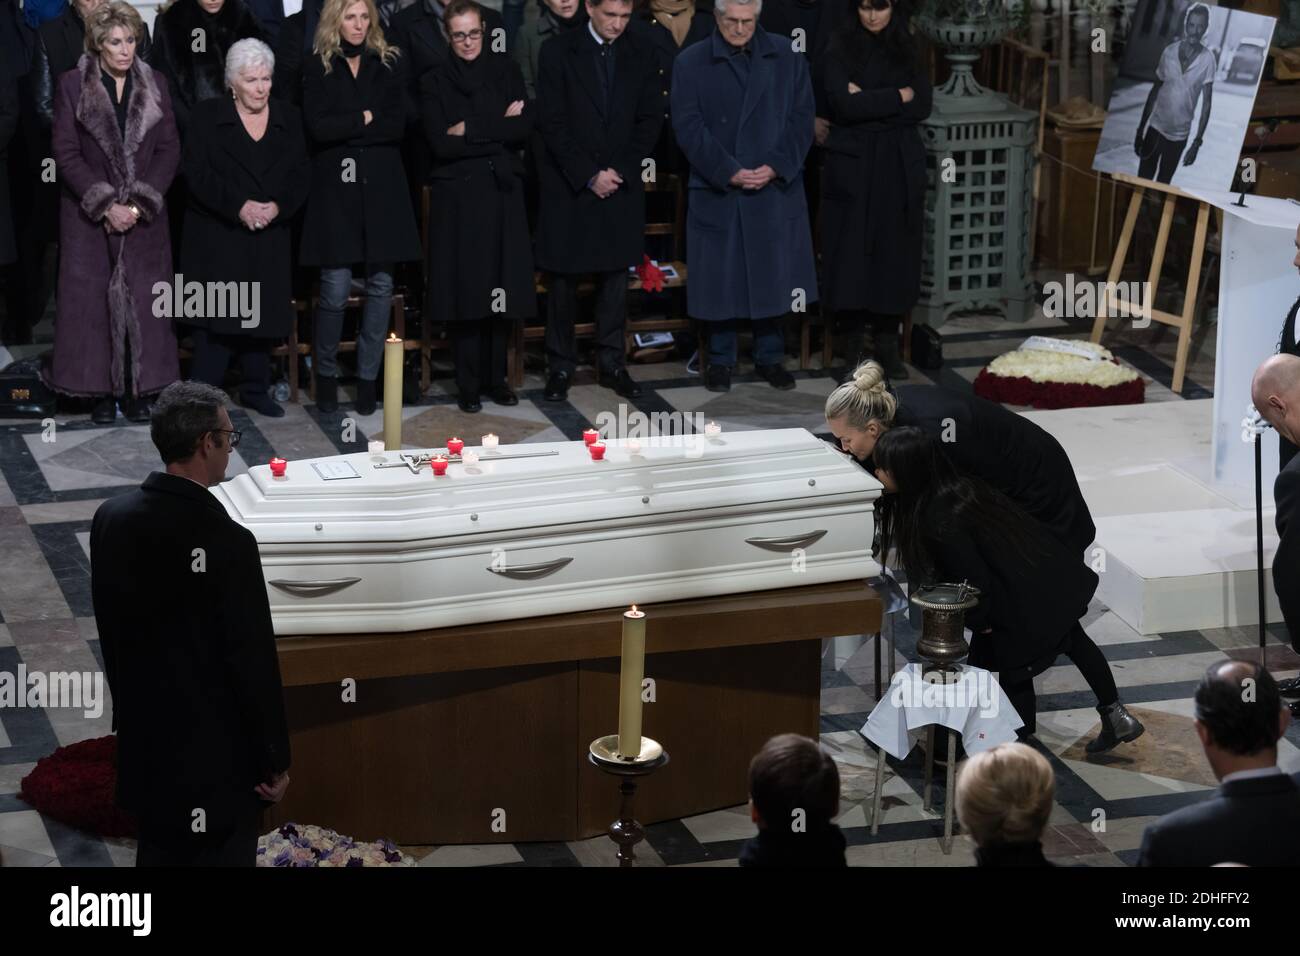 Laeticia, Joy et Jade Hallyday à la cérémonie funéraire en hommage au regretté chanteur français Johnny Hallyday à l'église de la Madeleine à Paris, FRANCE -09/1/2017 photo de Jacques Witt/pool/ABACAPRESS.COM Banque D'Images